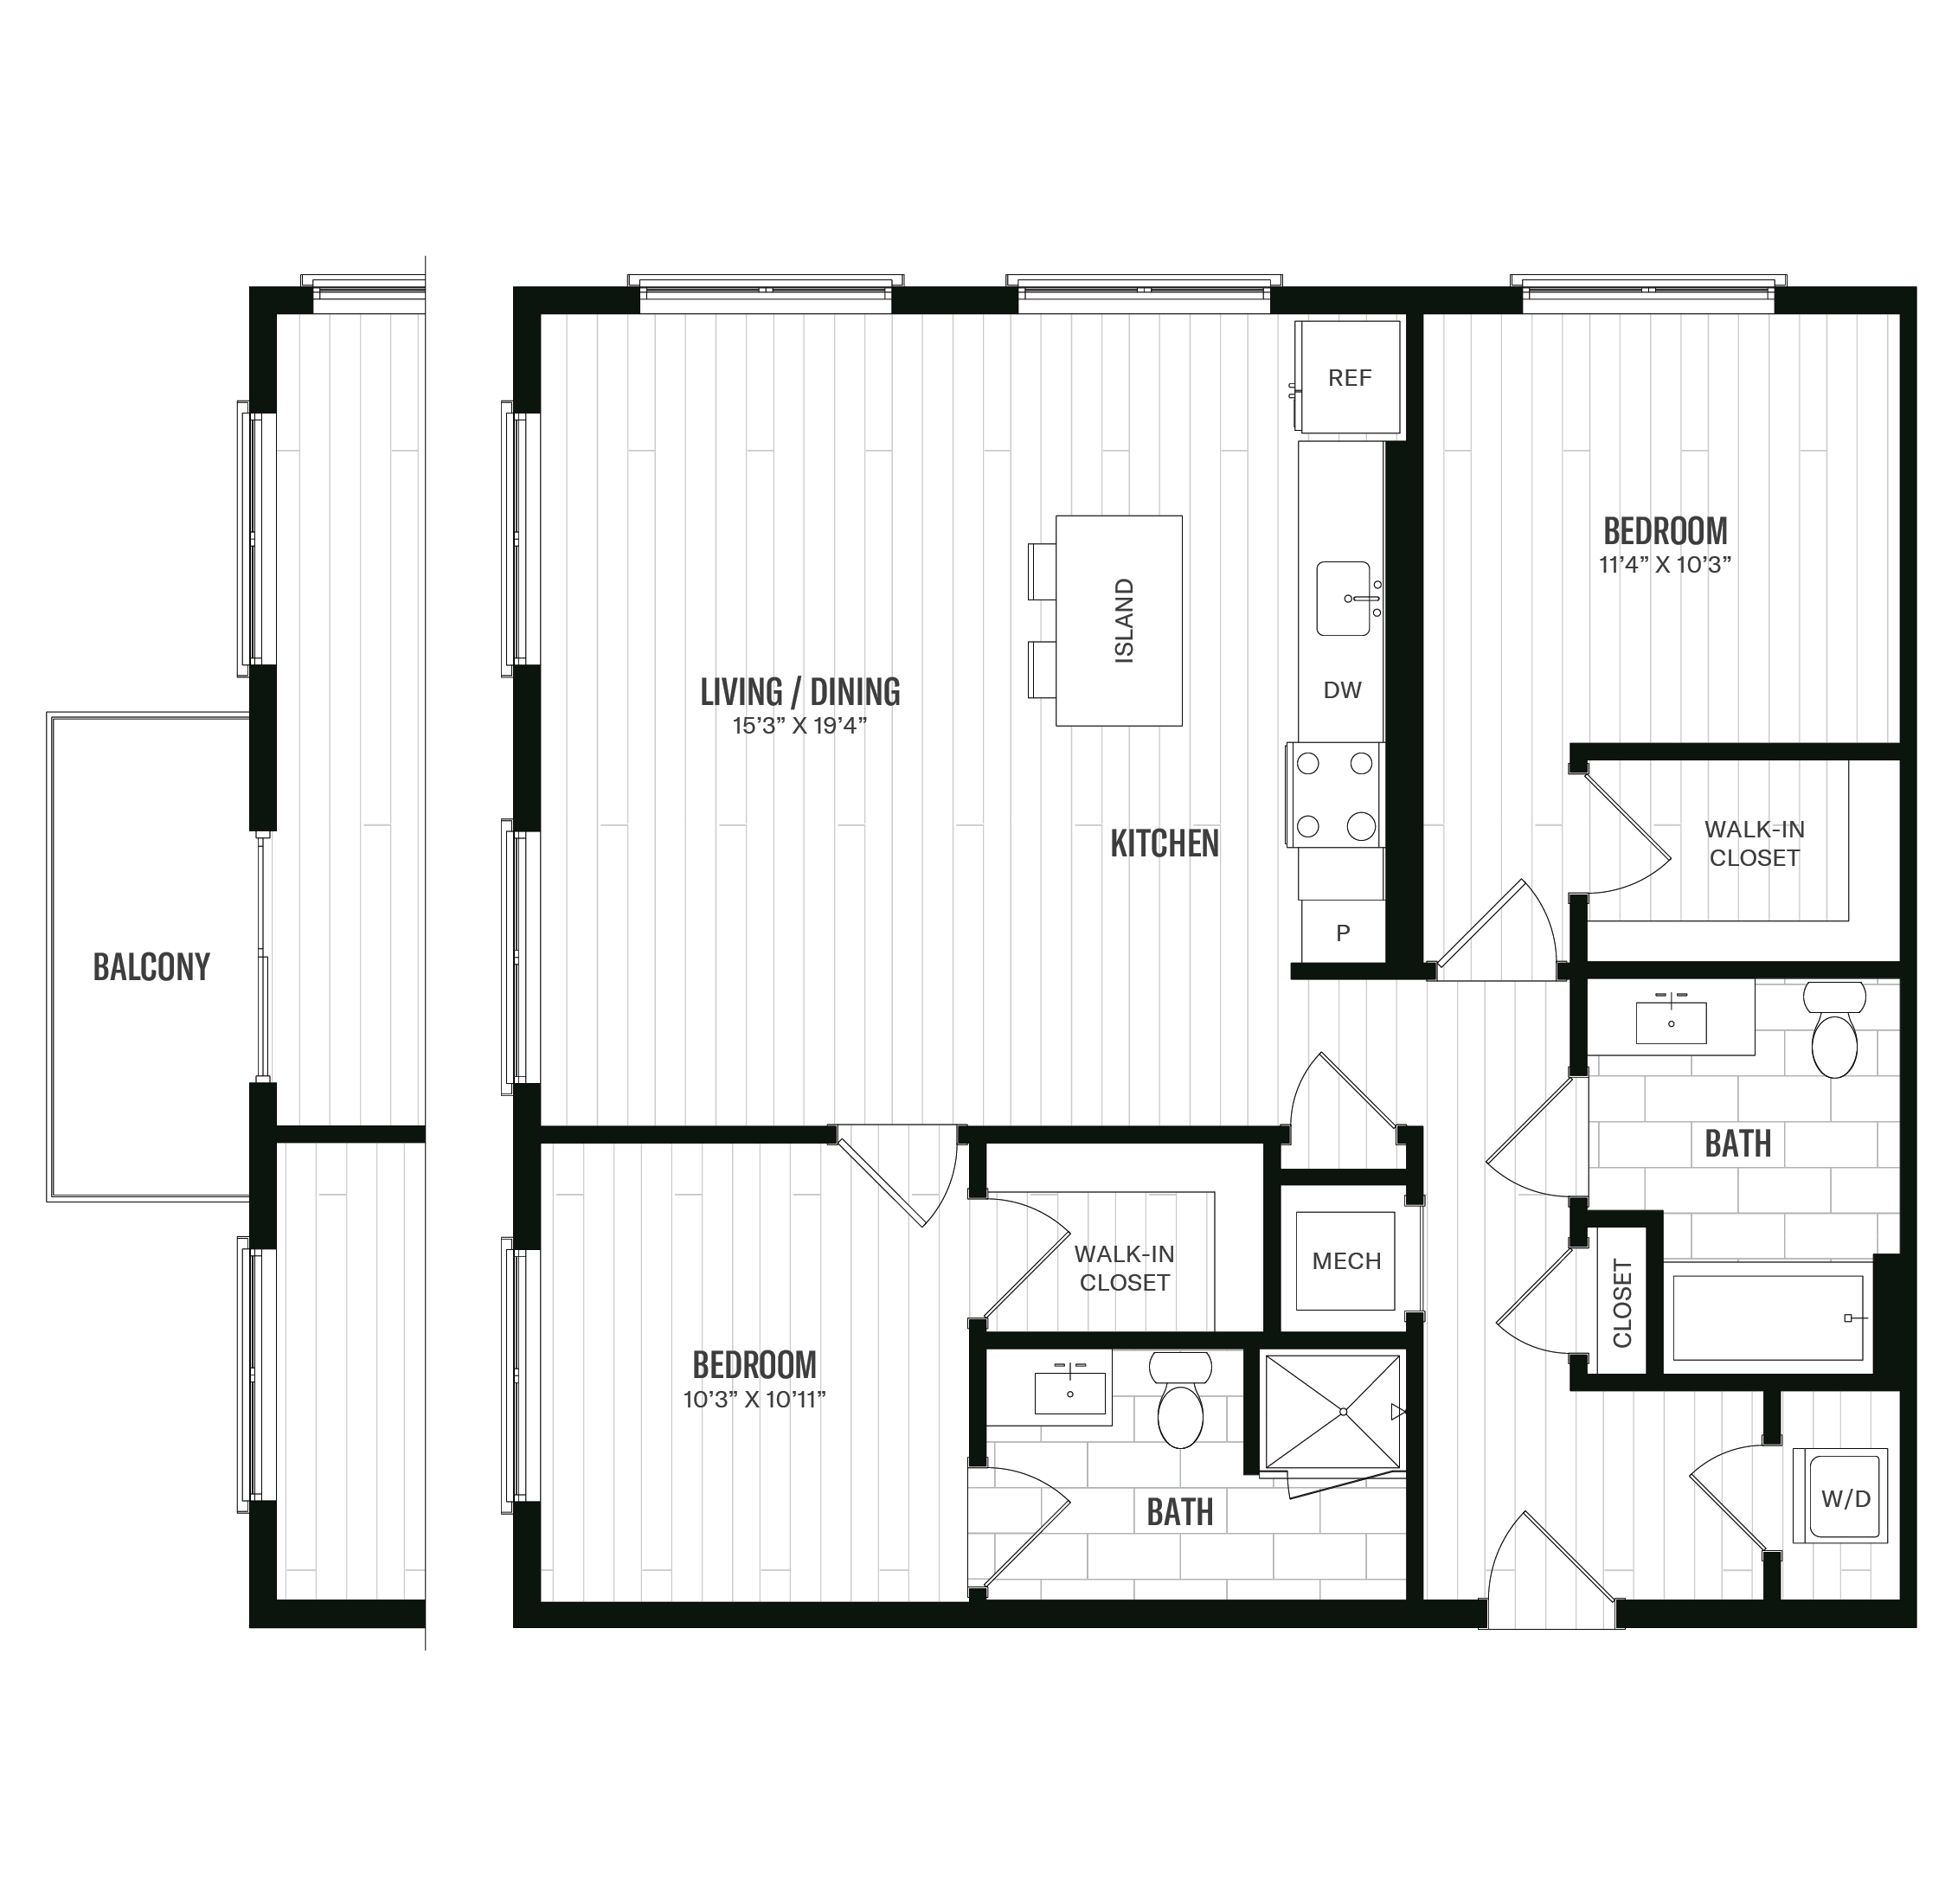 Floorplan image of unit 201